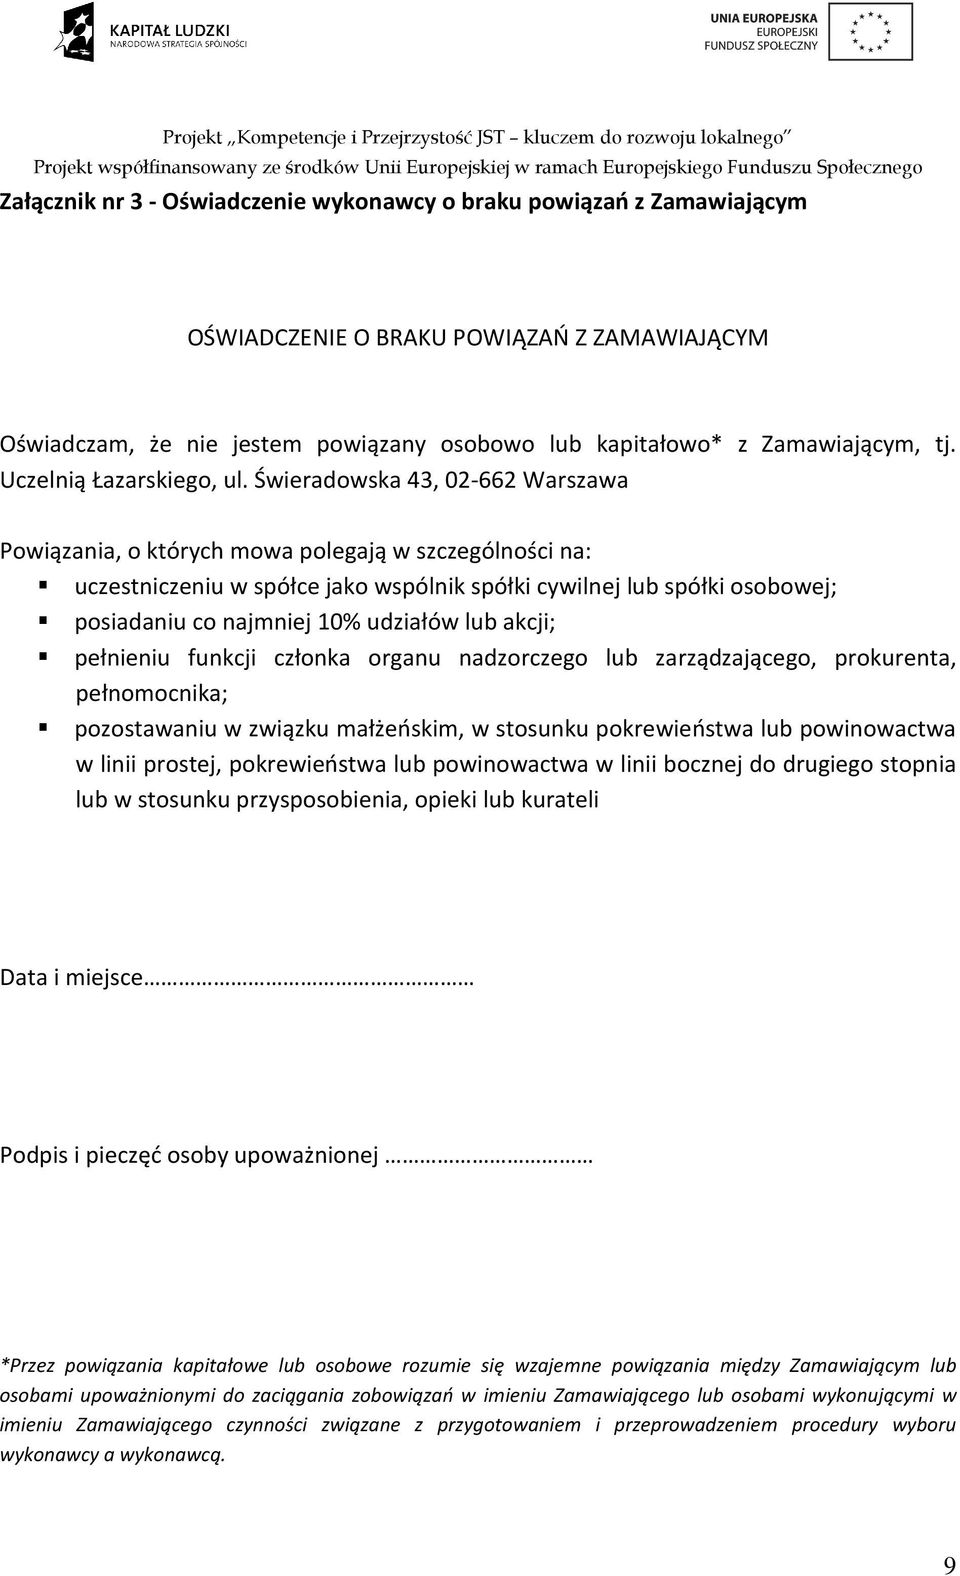 Świeradowska 43, 02-662 Warszawa Powiązania, o których mowa polegają w szczególności na: uczestniczeniu w spółce jako wspólnik spółki cywilnej lub spółki osobowej; posiadaniu co najmniej 10% udziałów